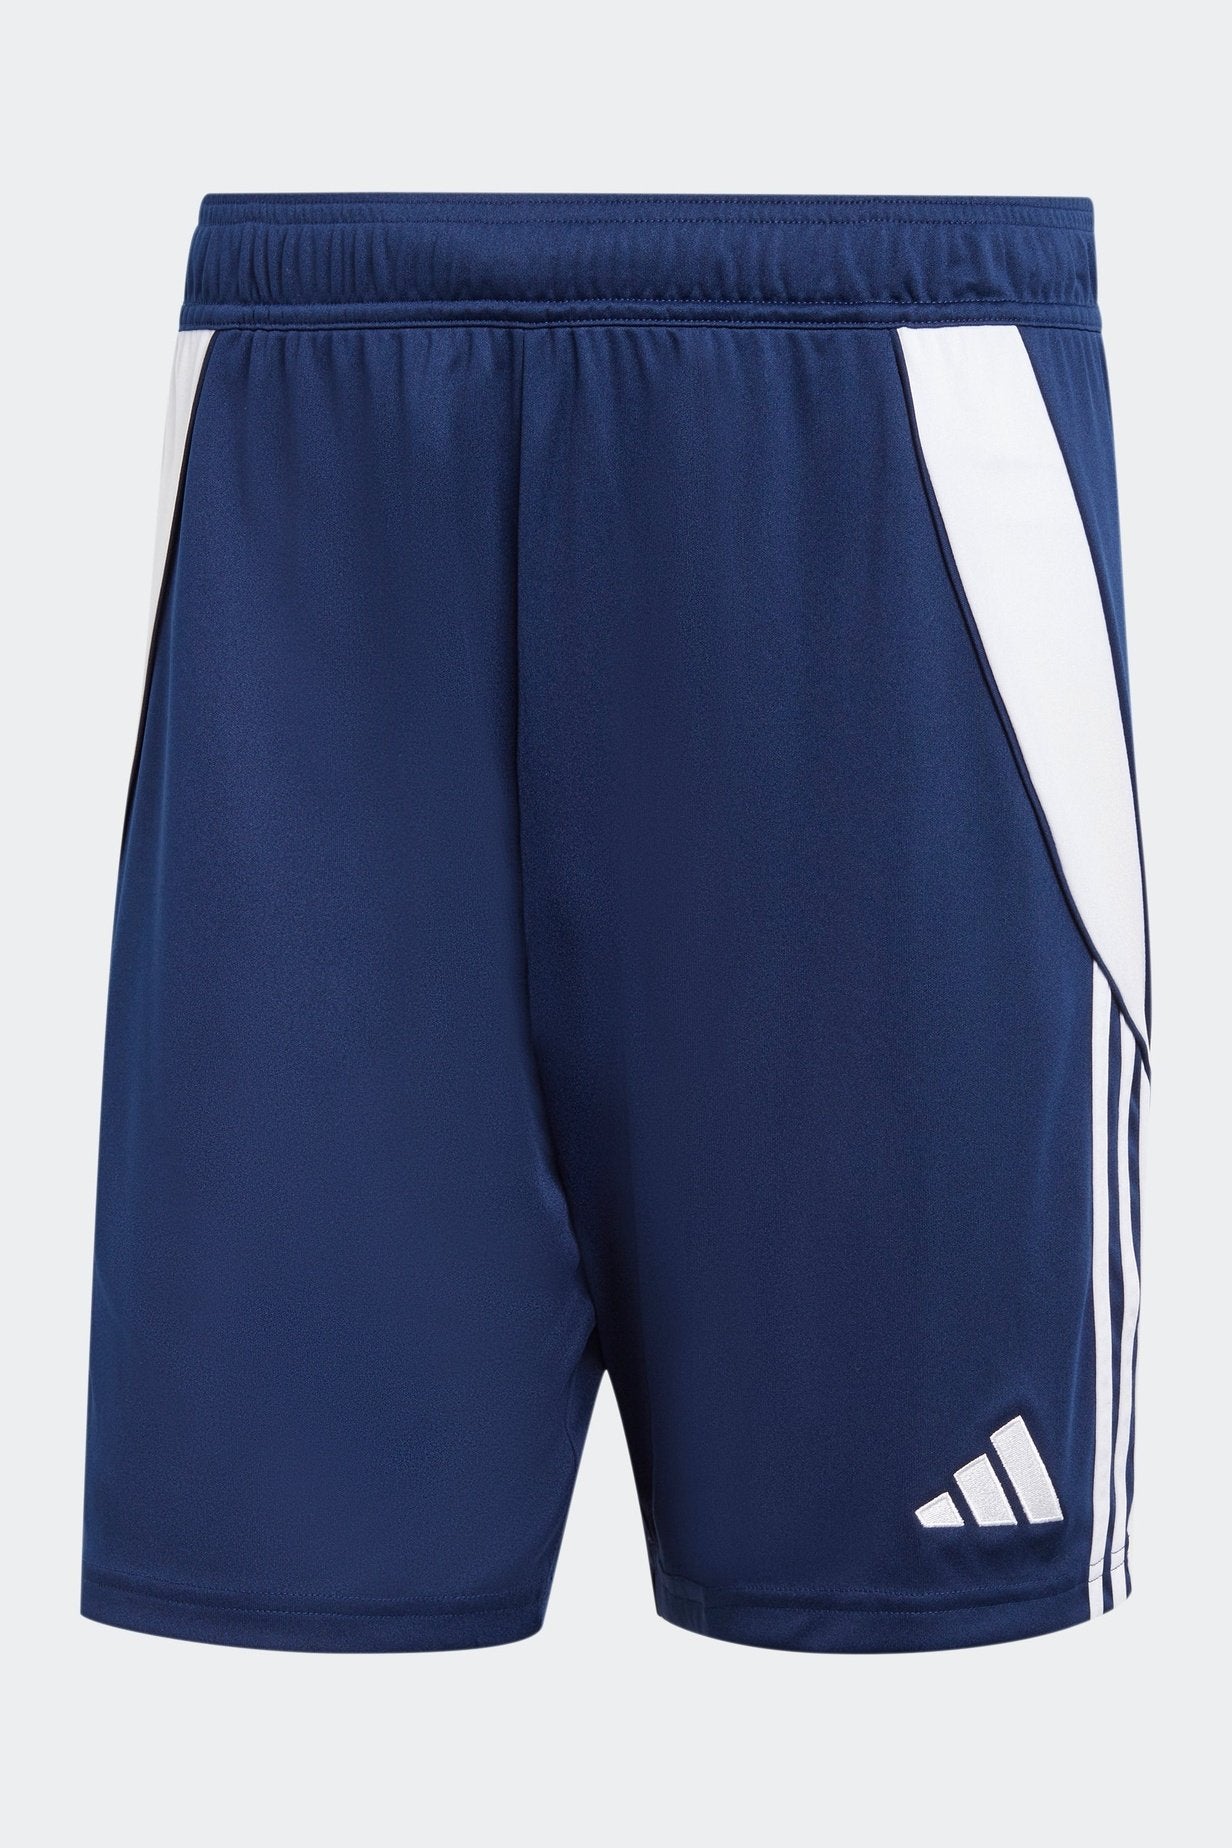 מכנסיים קצרים לגברים TIRO 24 בצבע כחול